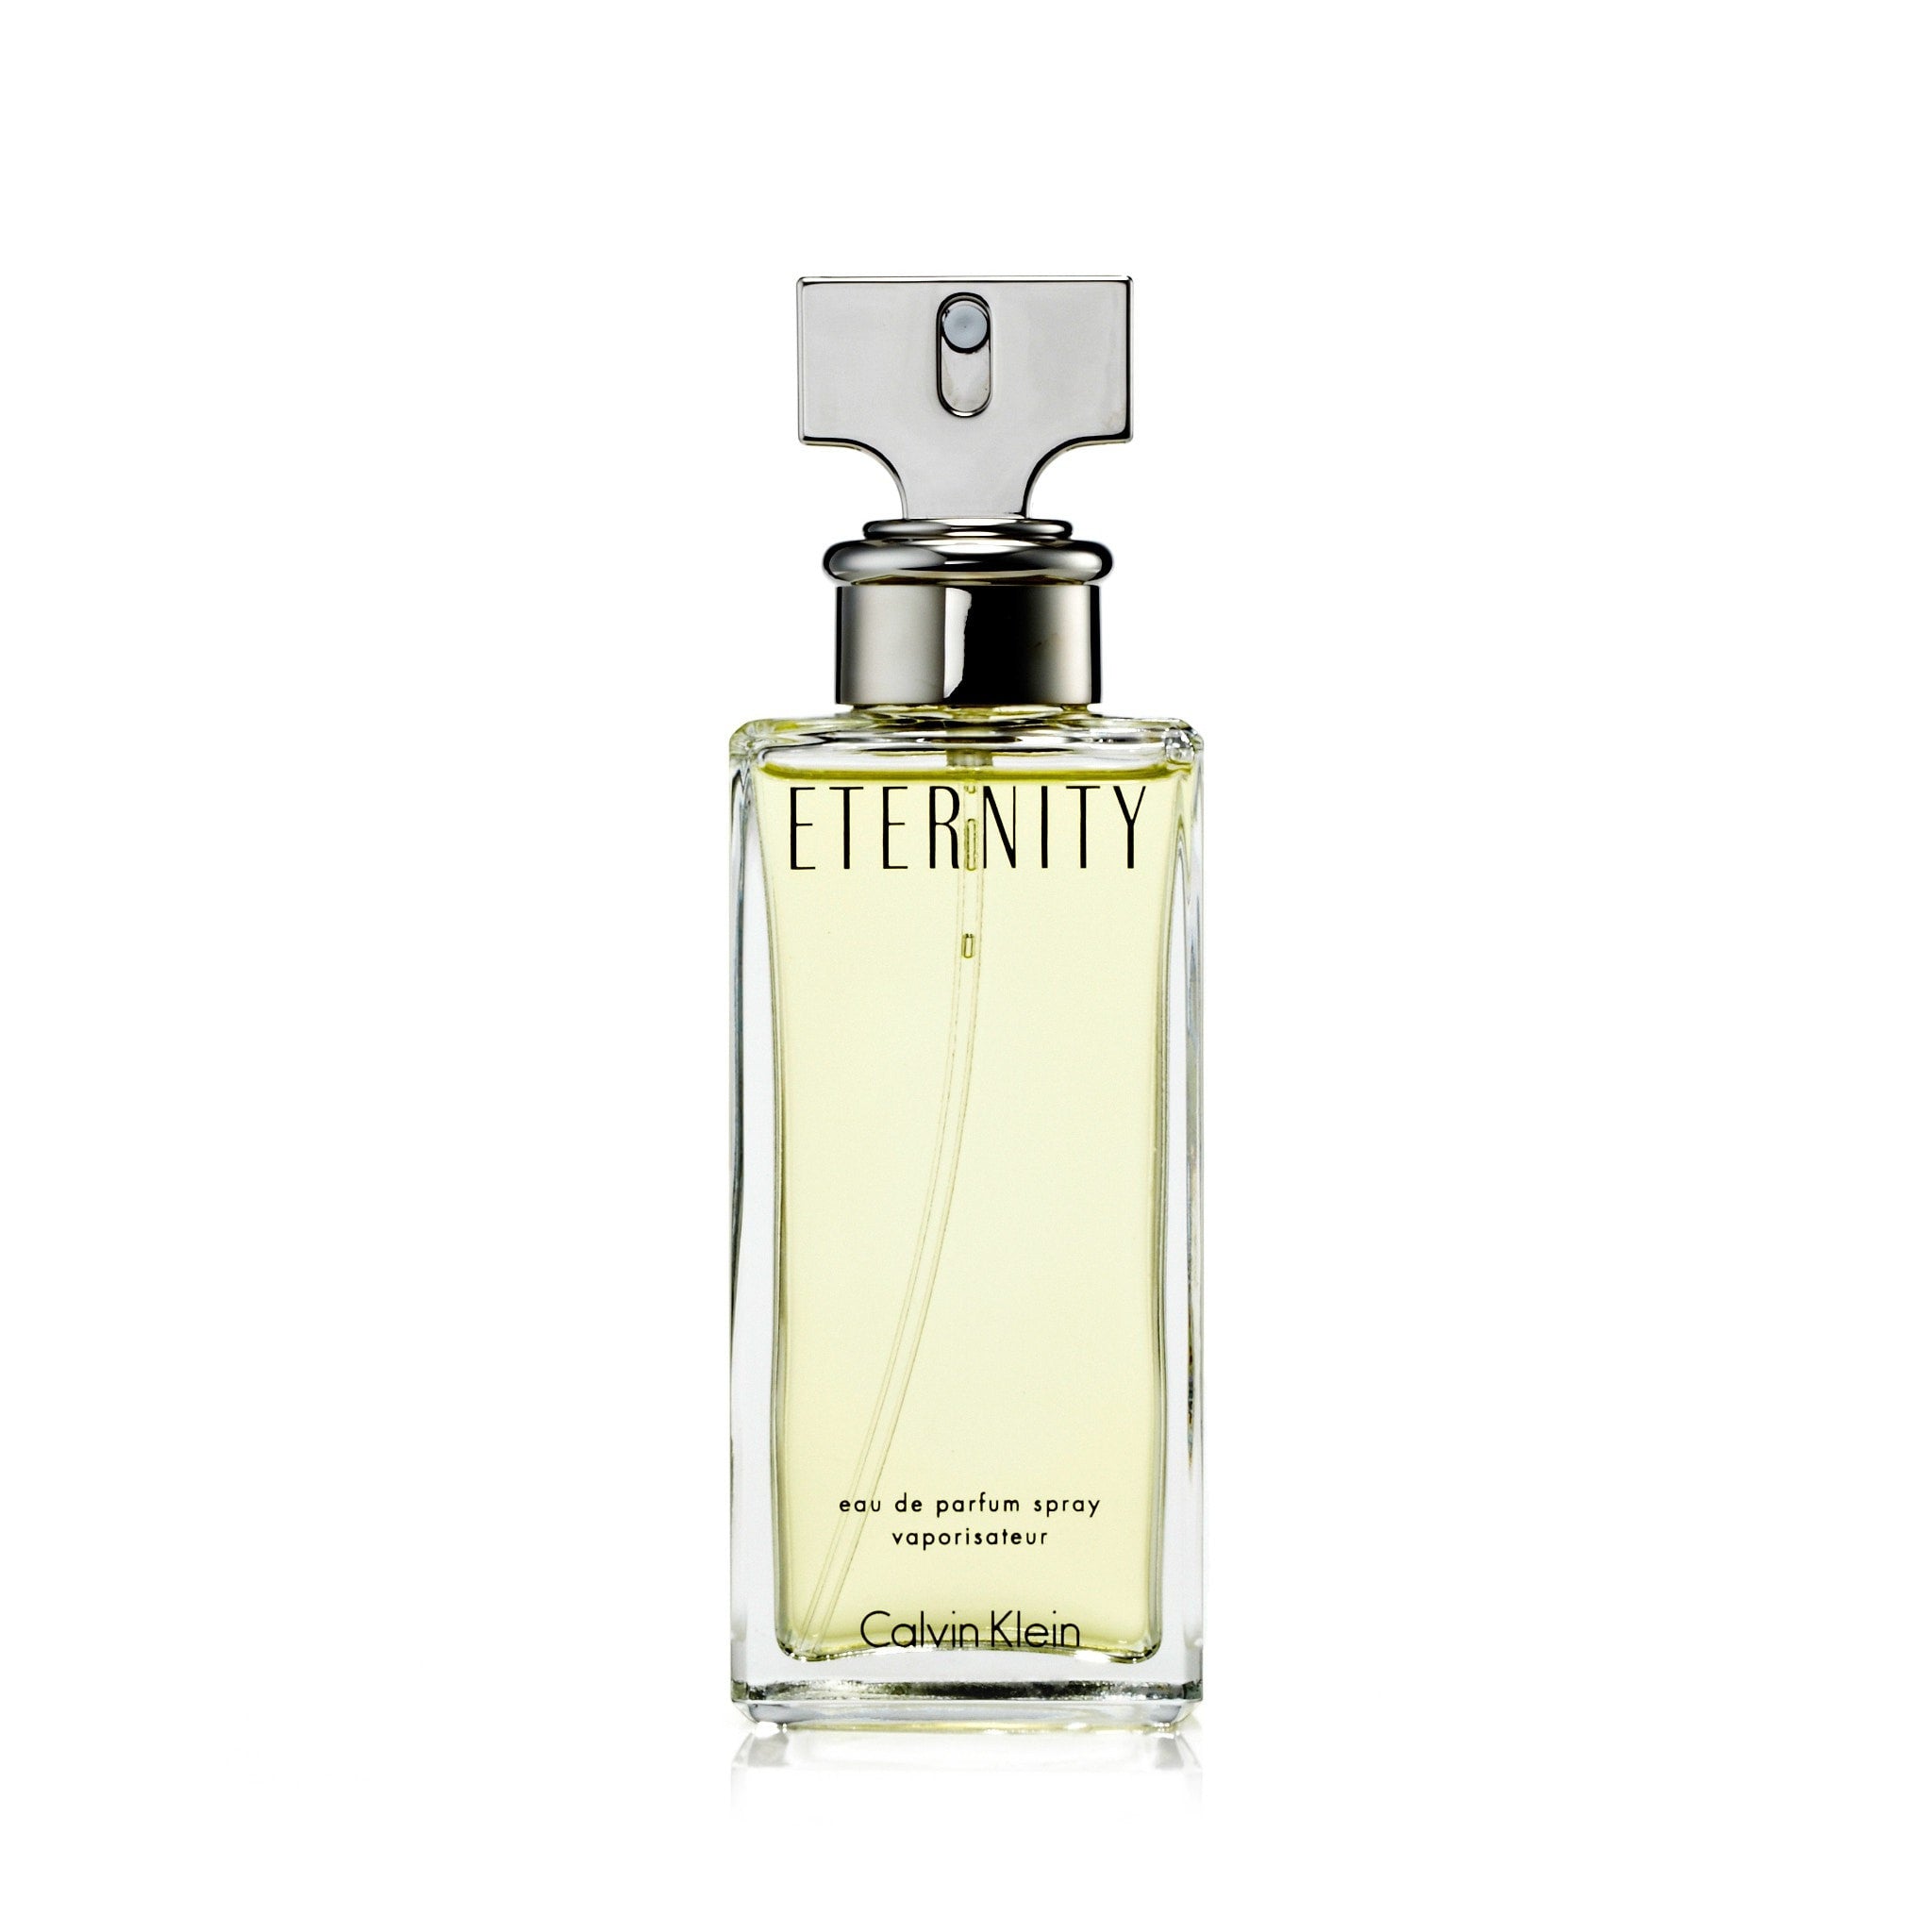 Oh La La Azzaro perfume - a fragrance for women 1993